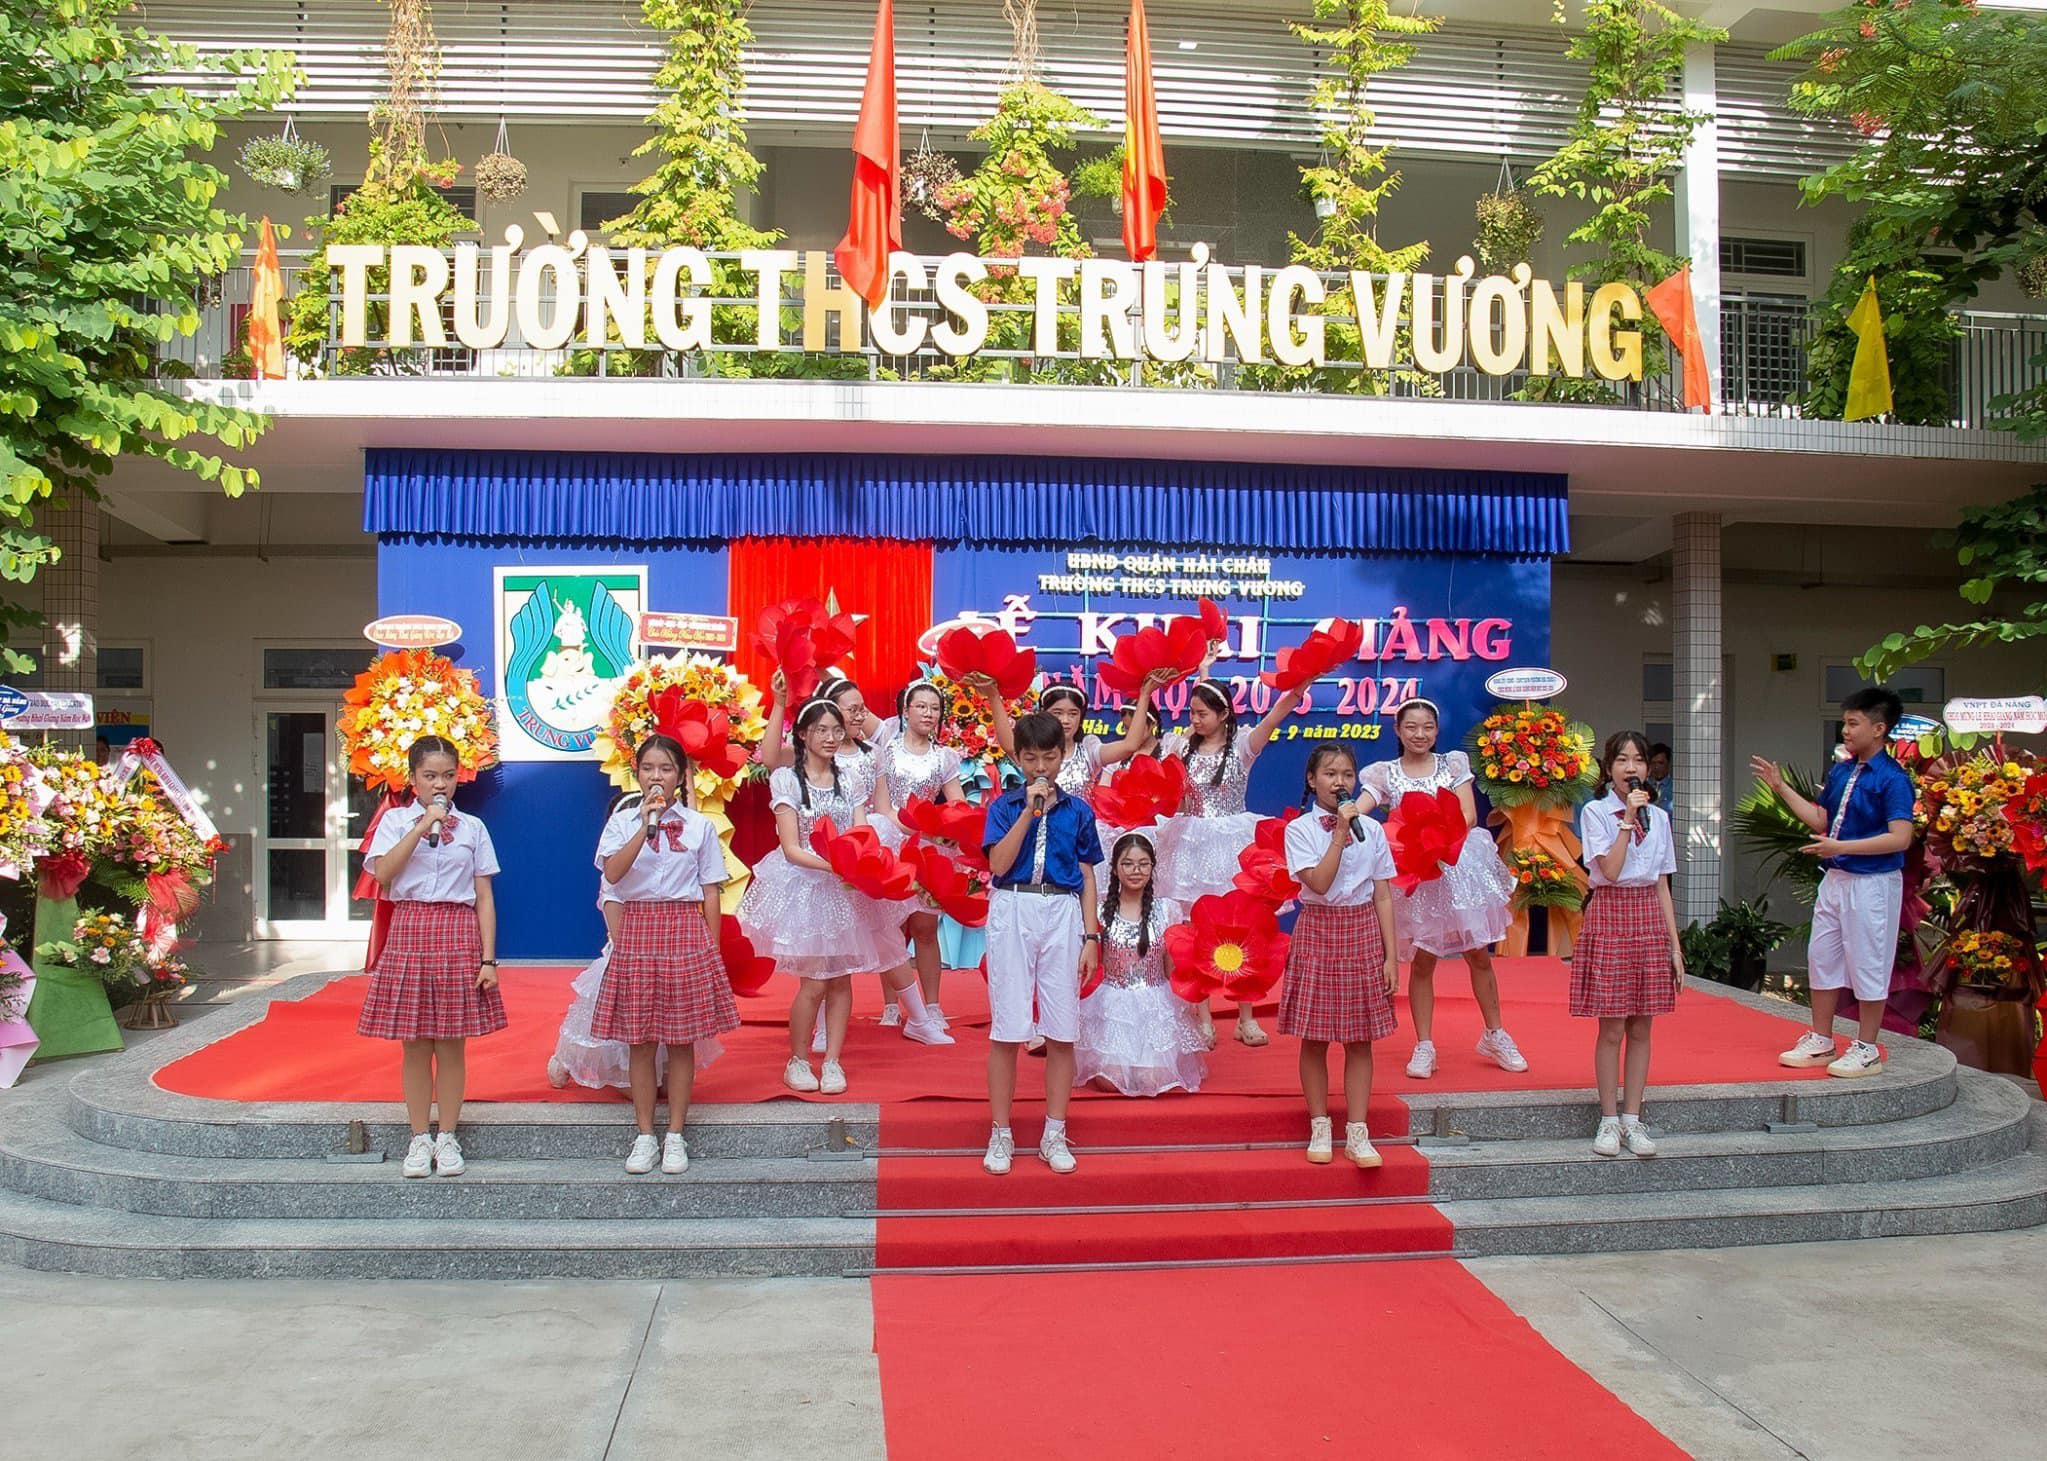 Trường THCS Trưng vương - Đà Nẵng ảnh 2